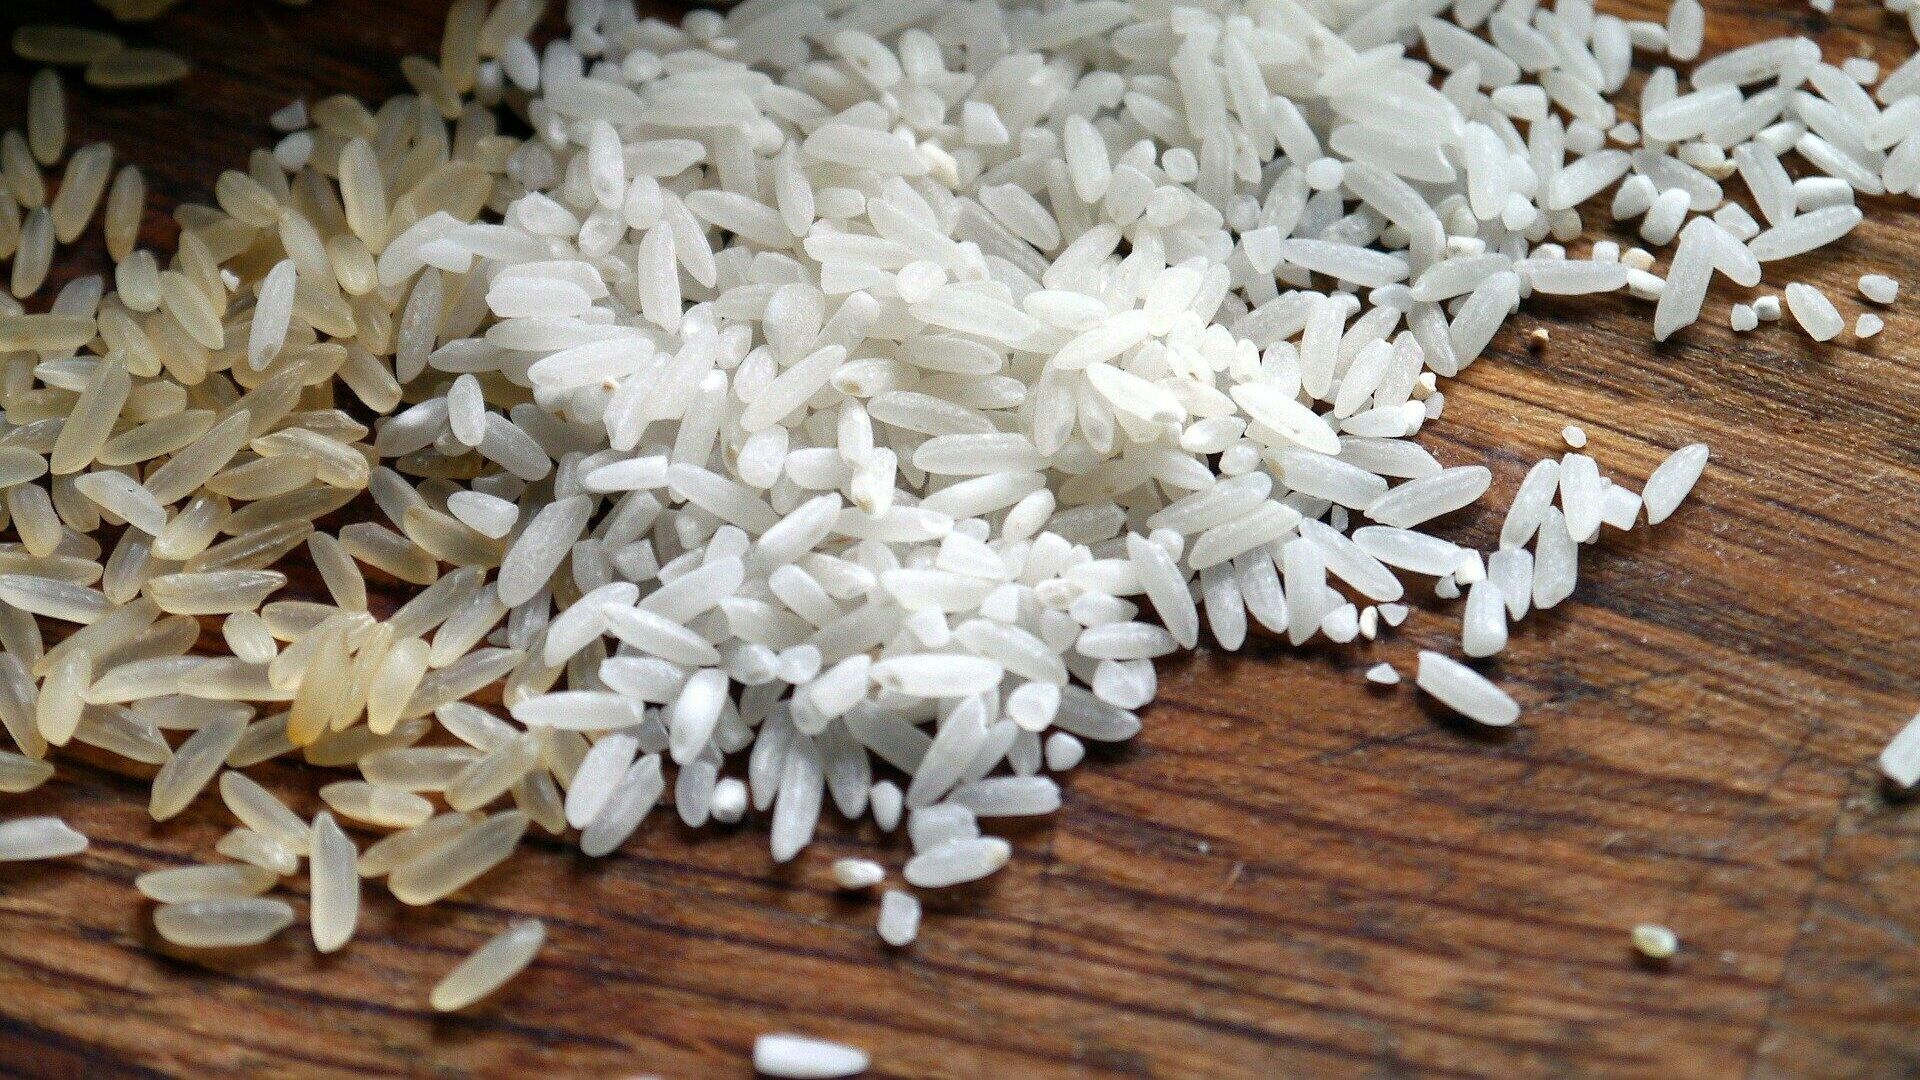 Цены на рис в Азии выросли до двухлетнего максимума из-за явления Эль-Ниньо